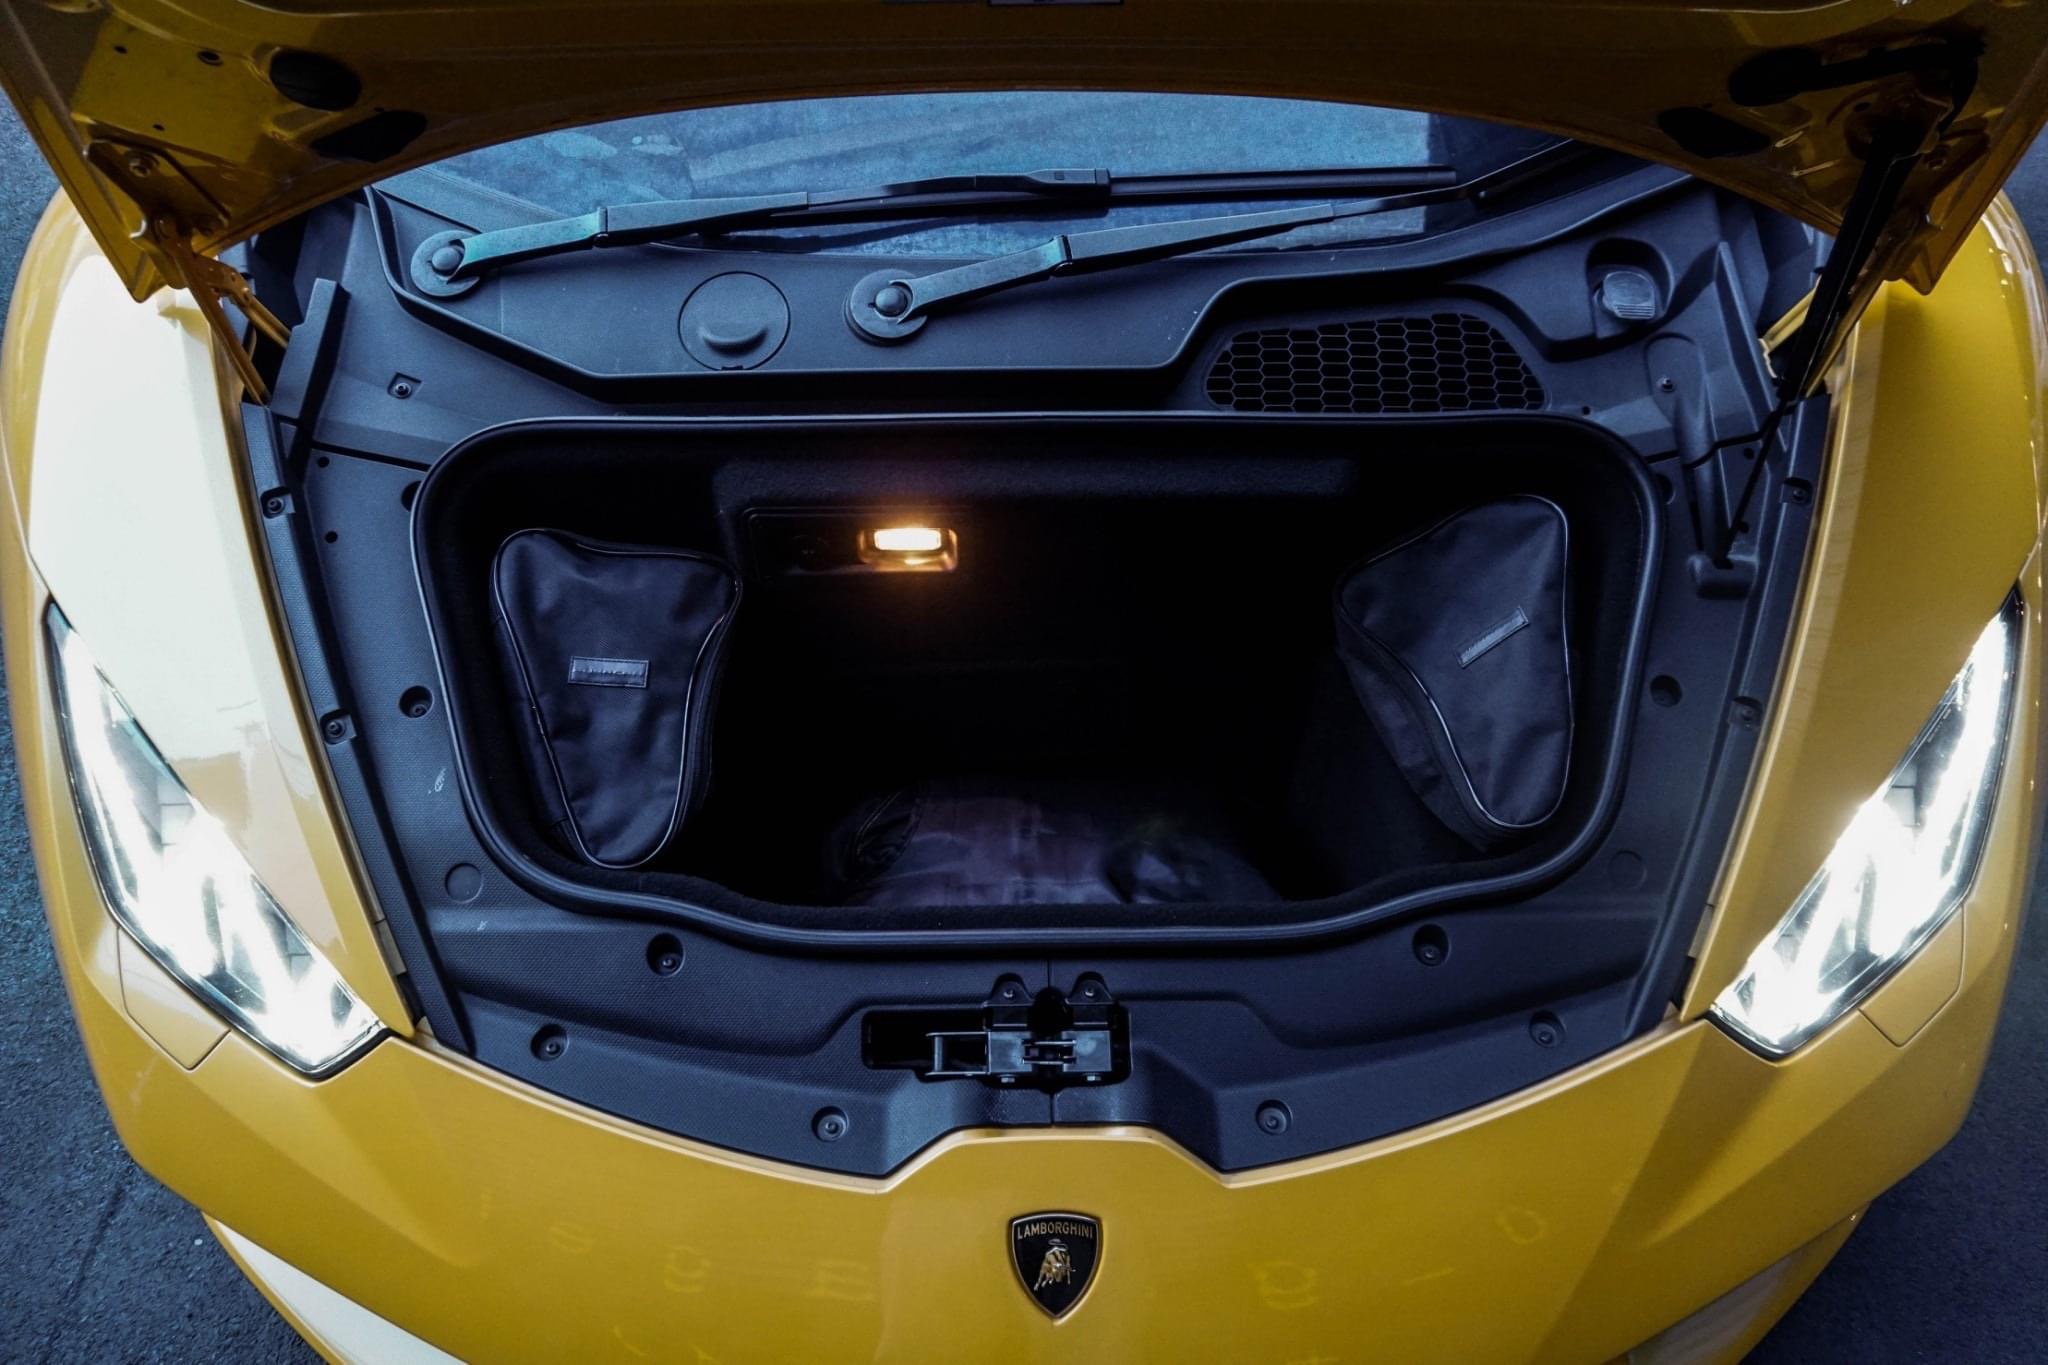 Lamborghini Huracan ปี 2016 สีเหลือง